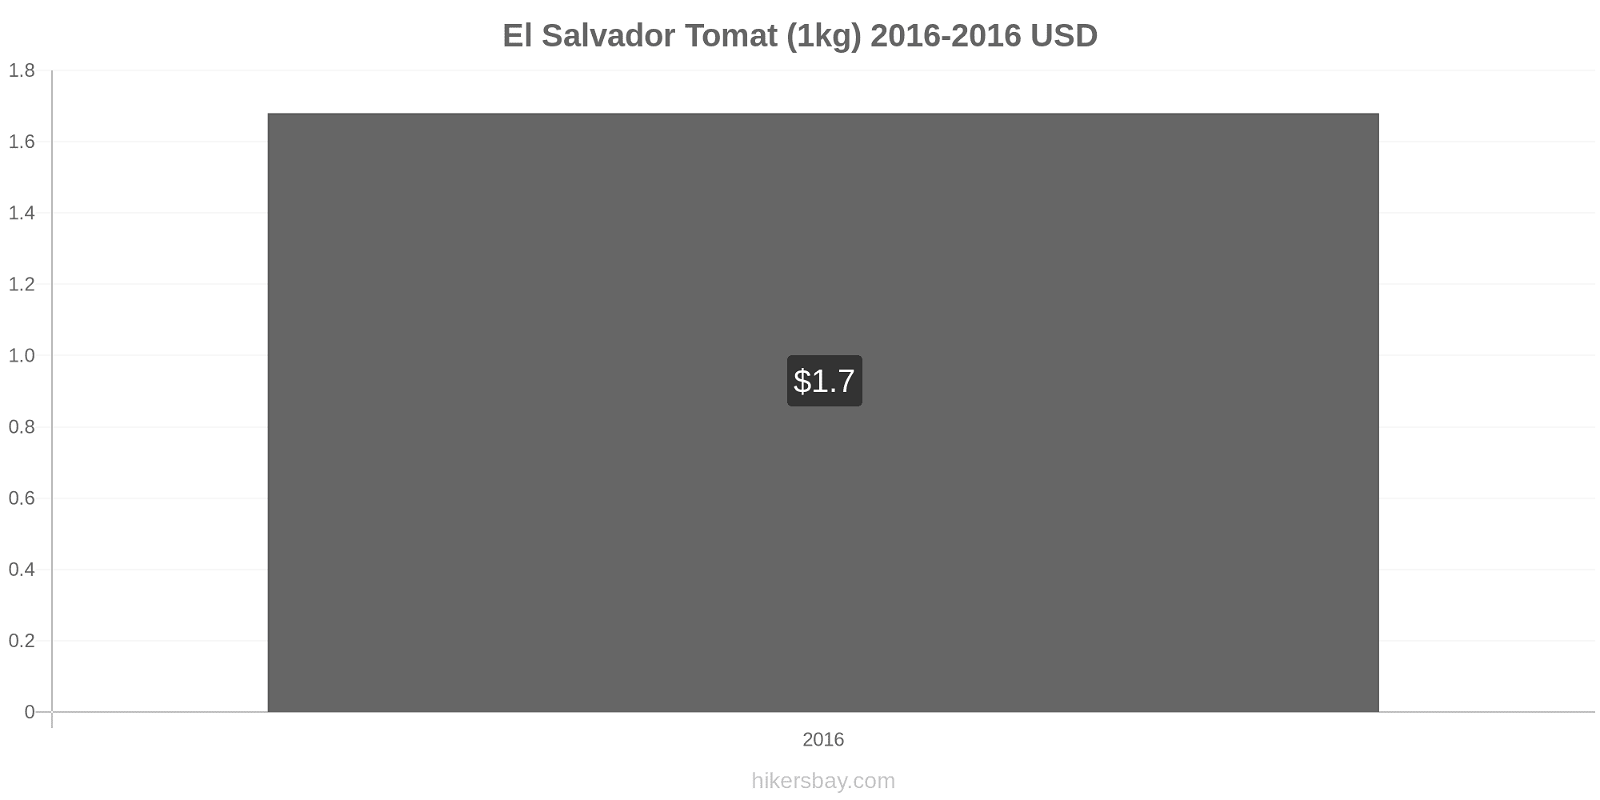 El Salvador prisförändringar Tomat (1kg) hikersbay.com